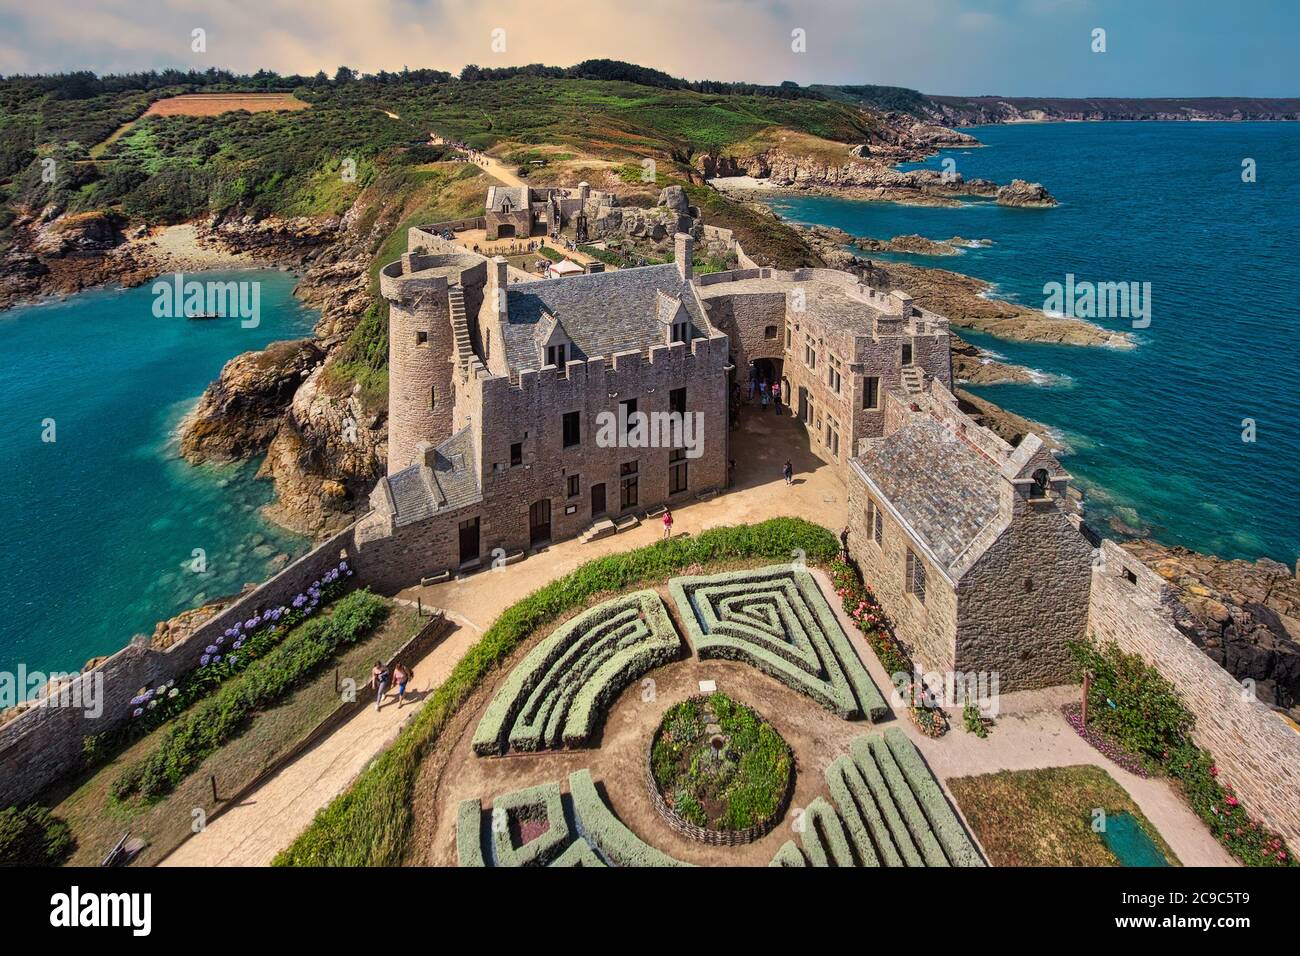 Fort-la-Latte est l'un des châteaux les plus célèbres de Bretagne. C'est une forteresse du XIVe siècle construite sur une falaise dans la baie de la Fresnaye. Banque D'Images